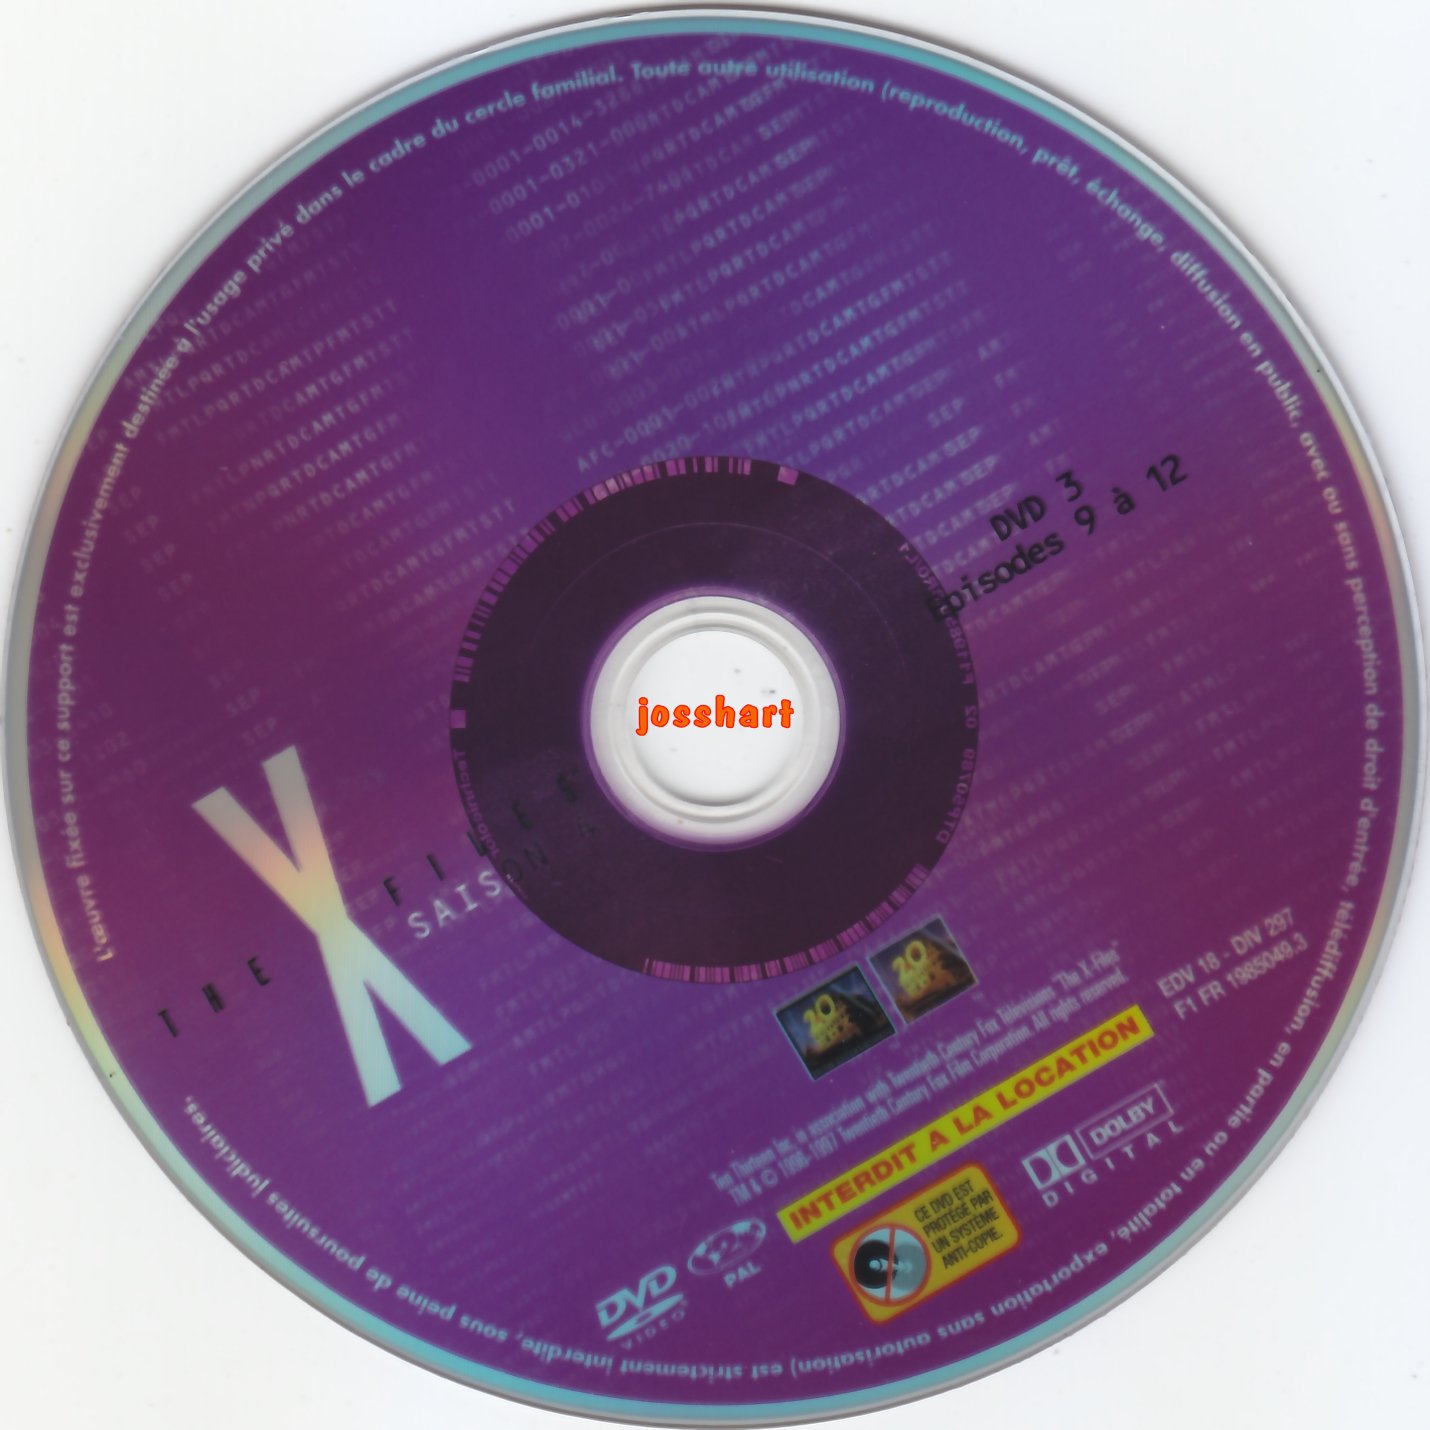 The X Files Saison 4 DVD 3 v2